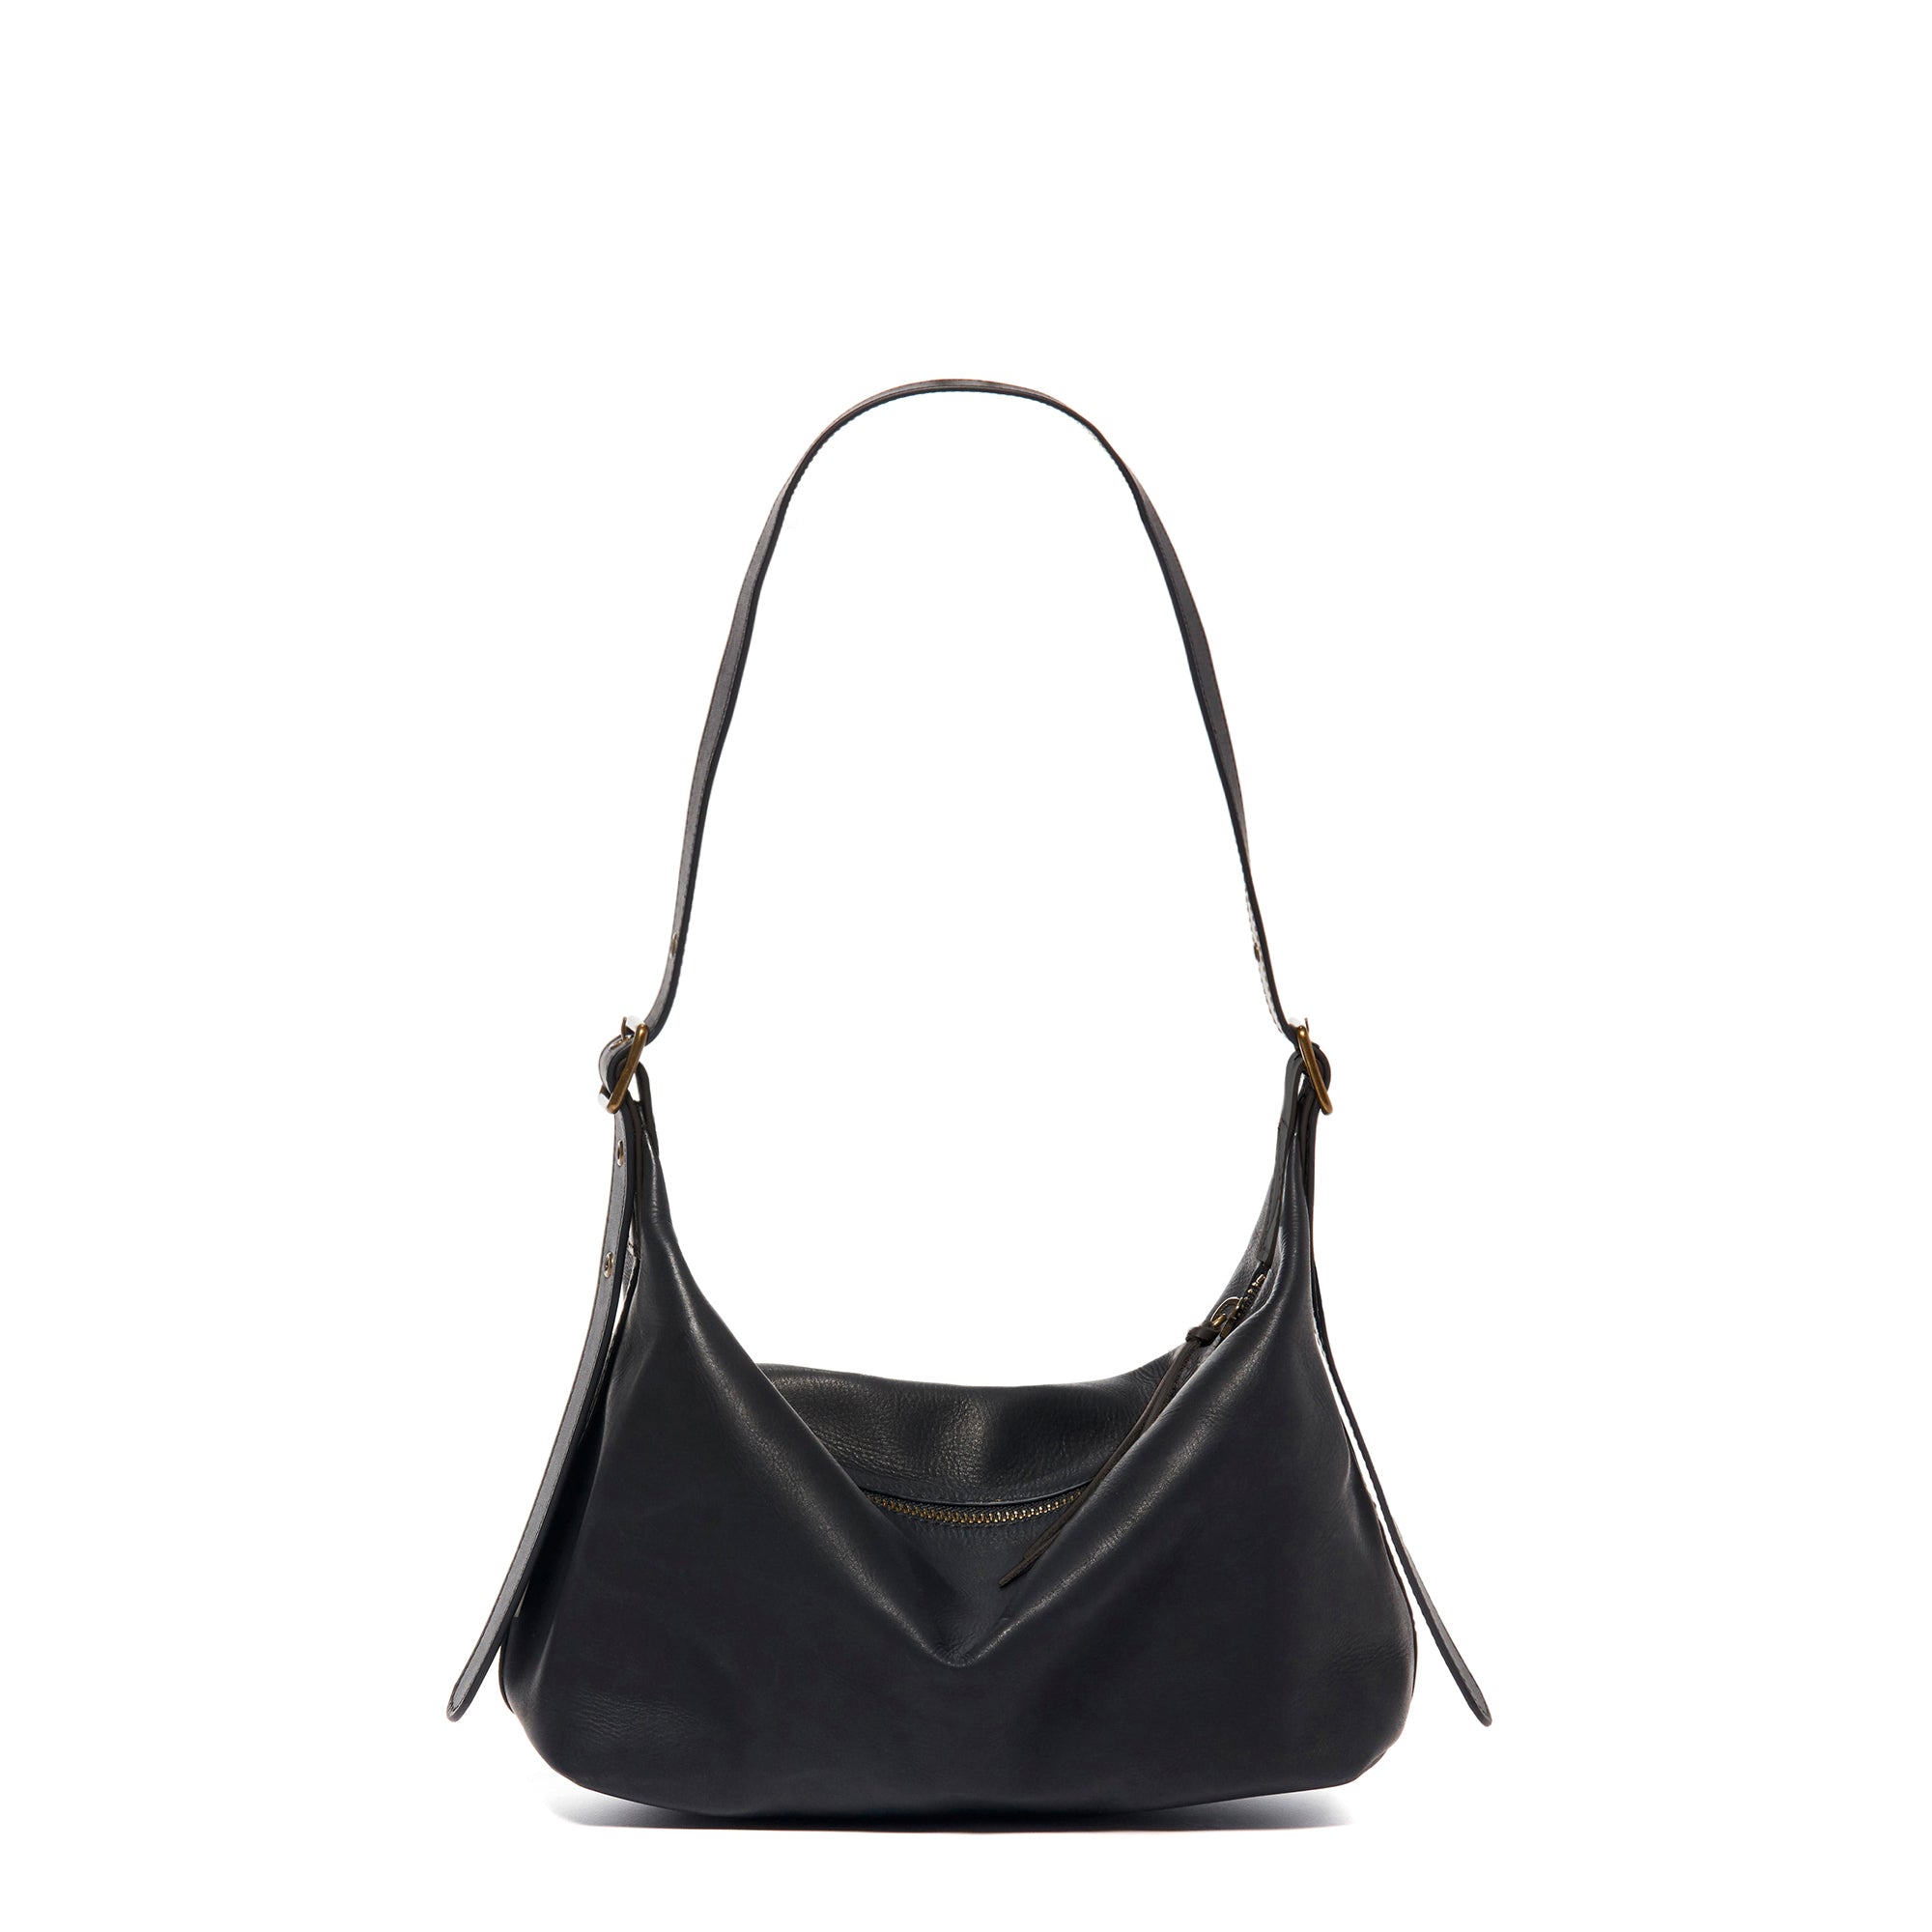 Black Slouchy Shoulder Bag - Large Soft Leather Purse